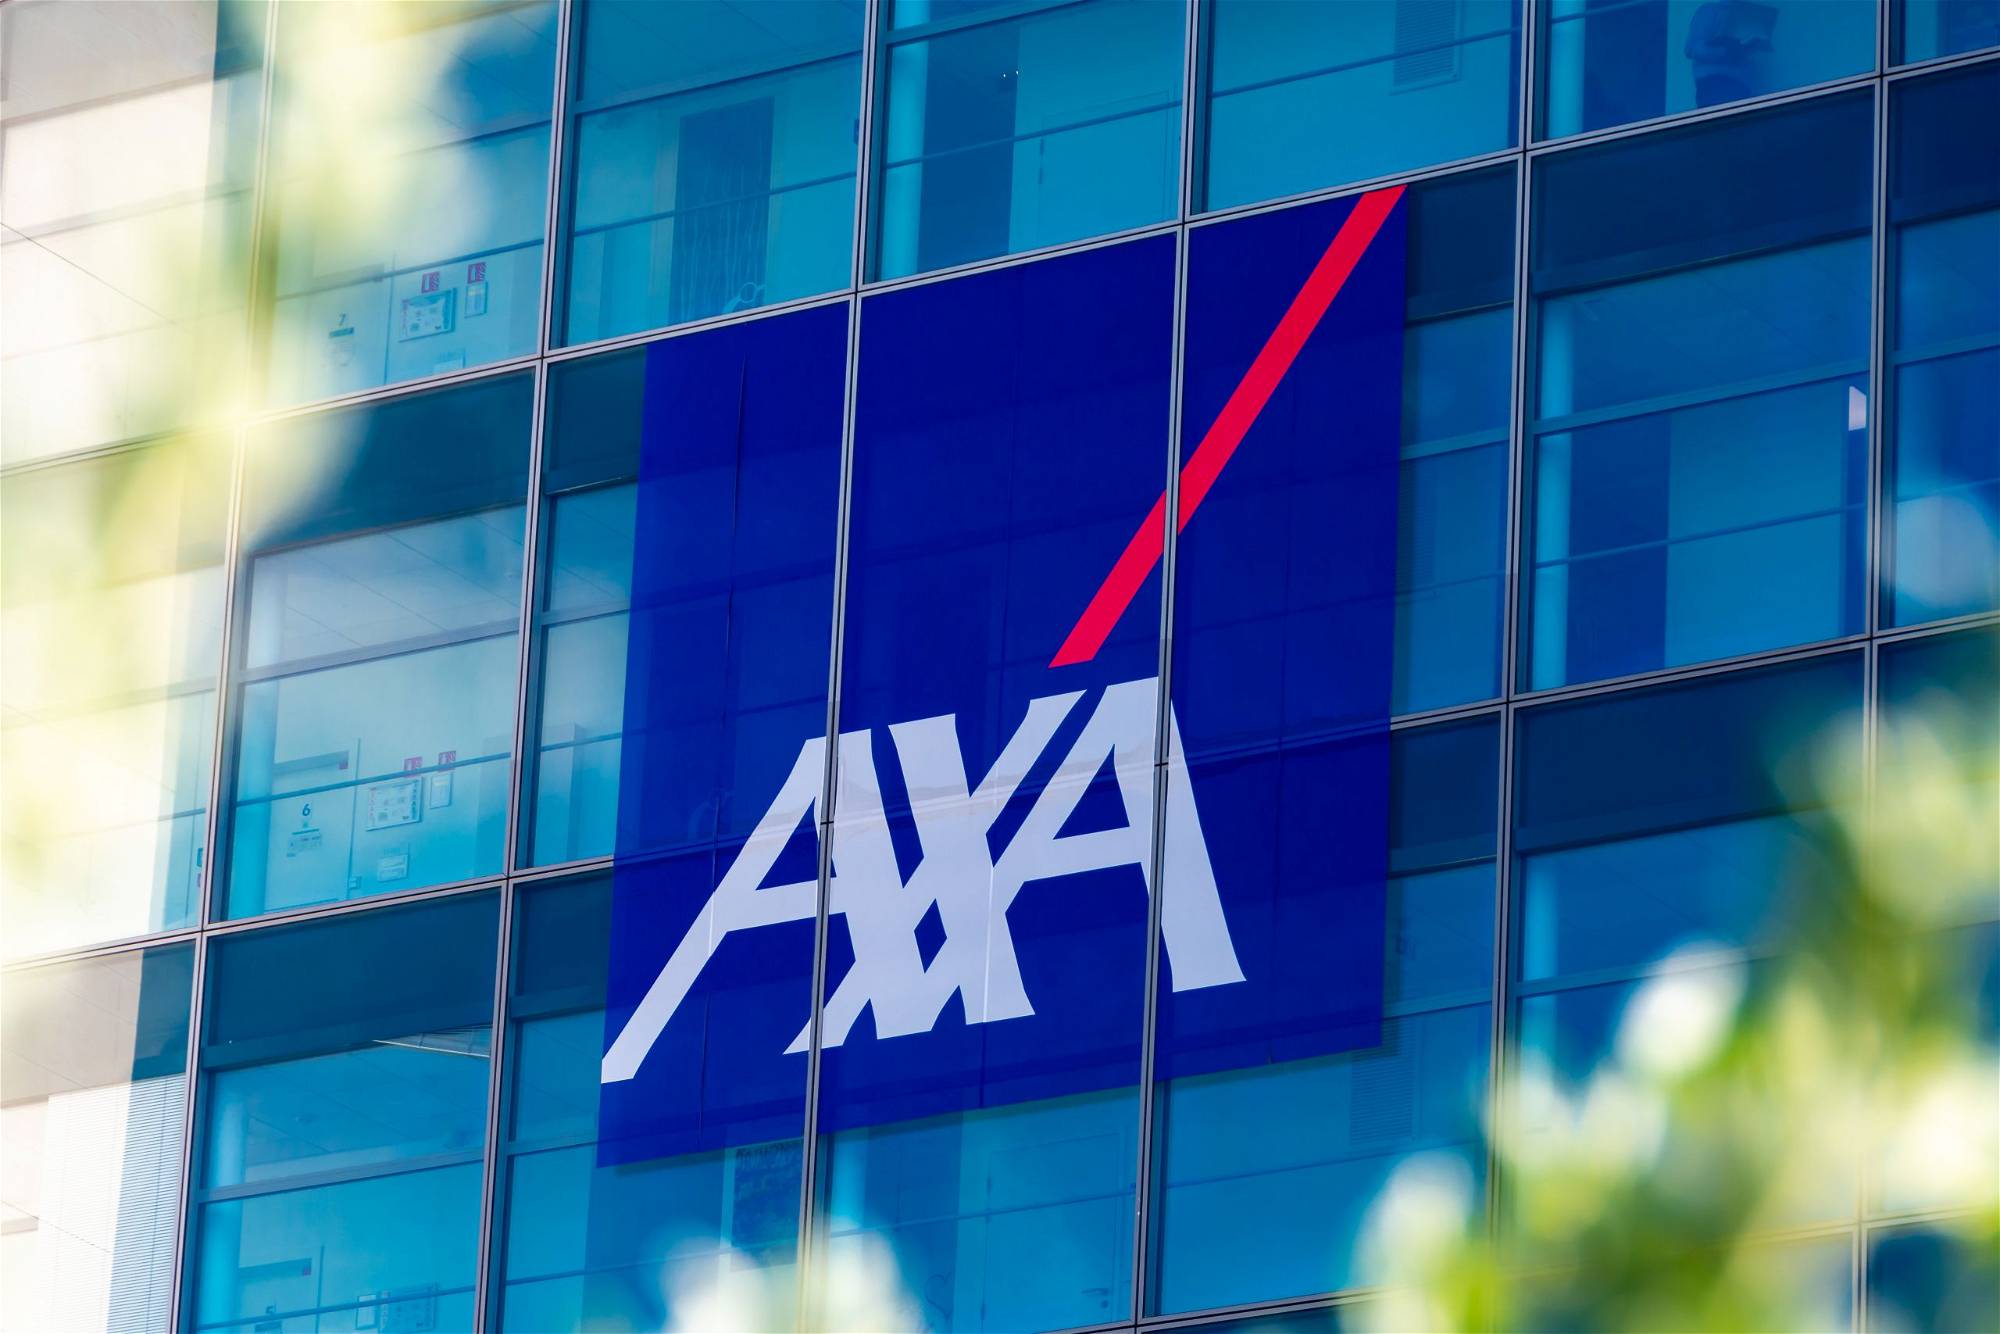 Axa-Aktie: Sollten Sie jetzt kaufen?